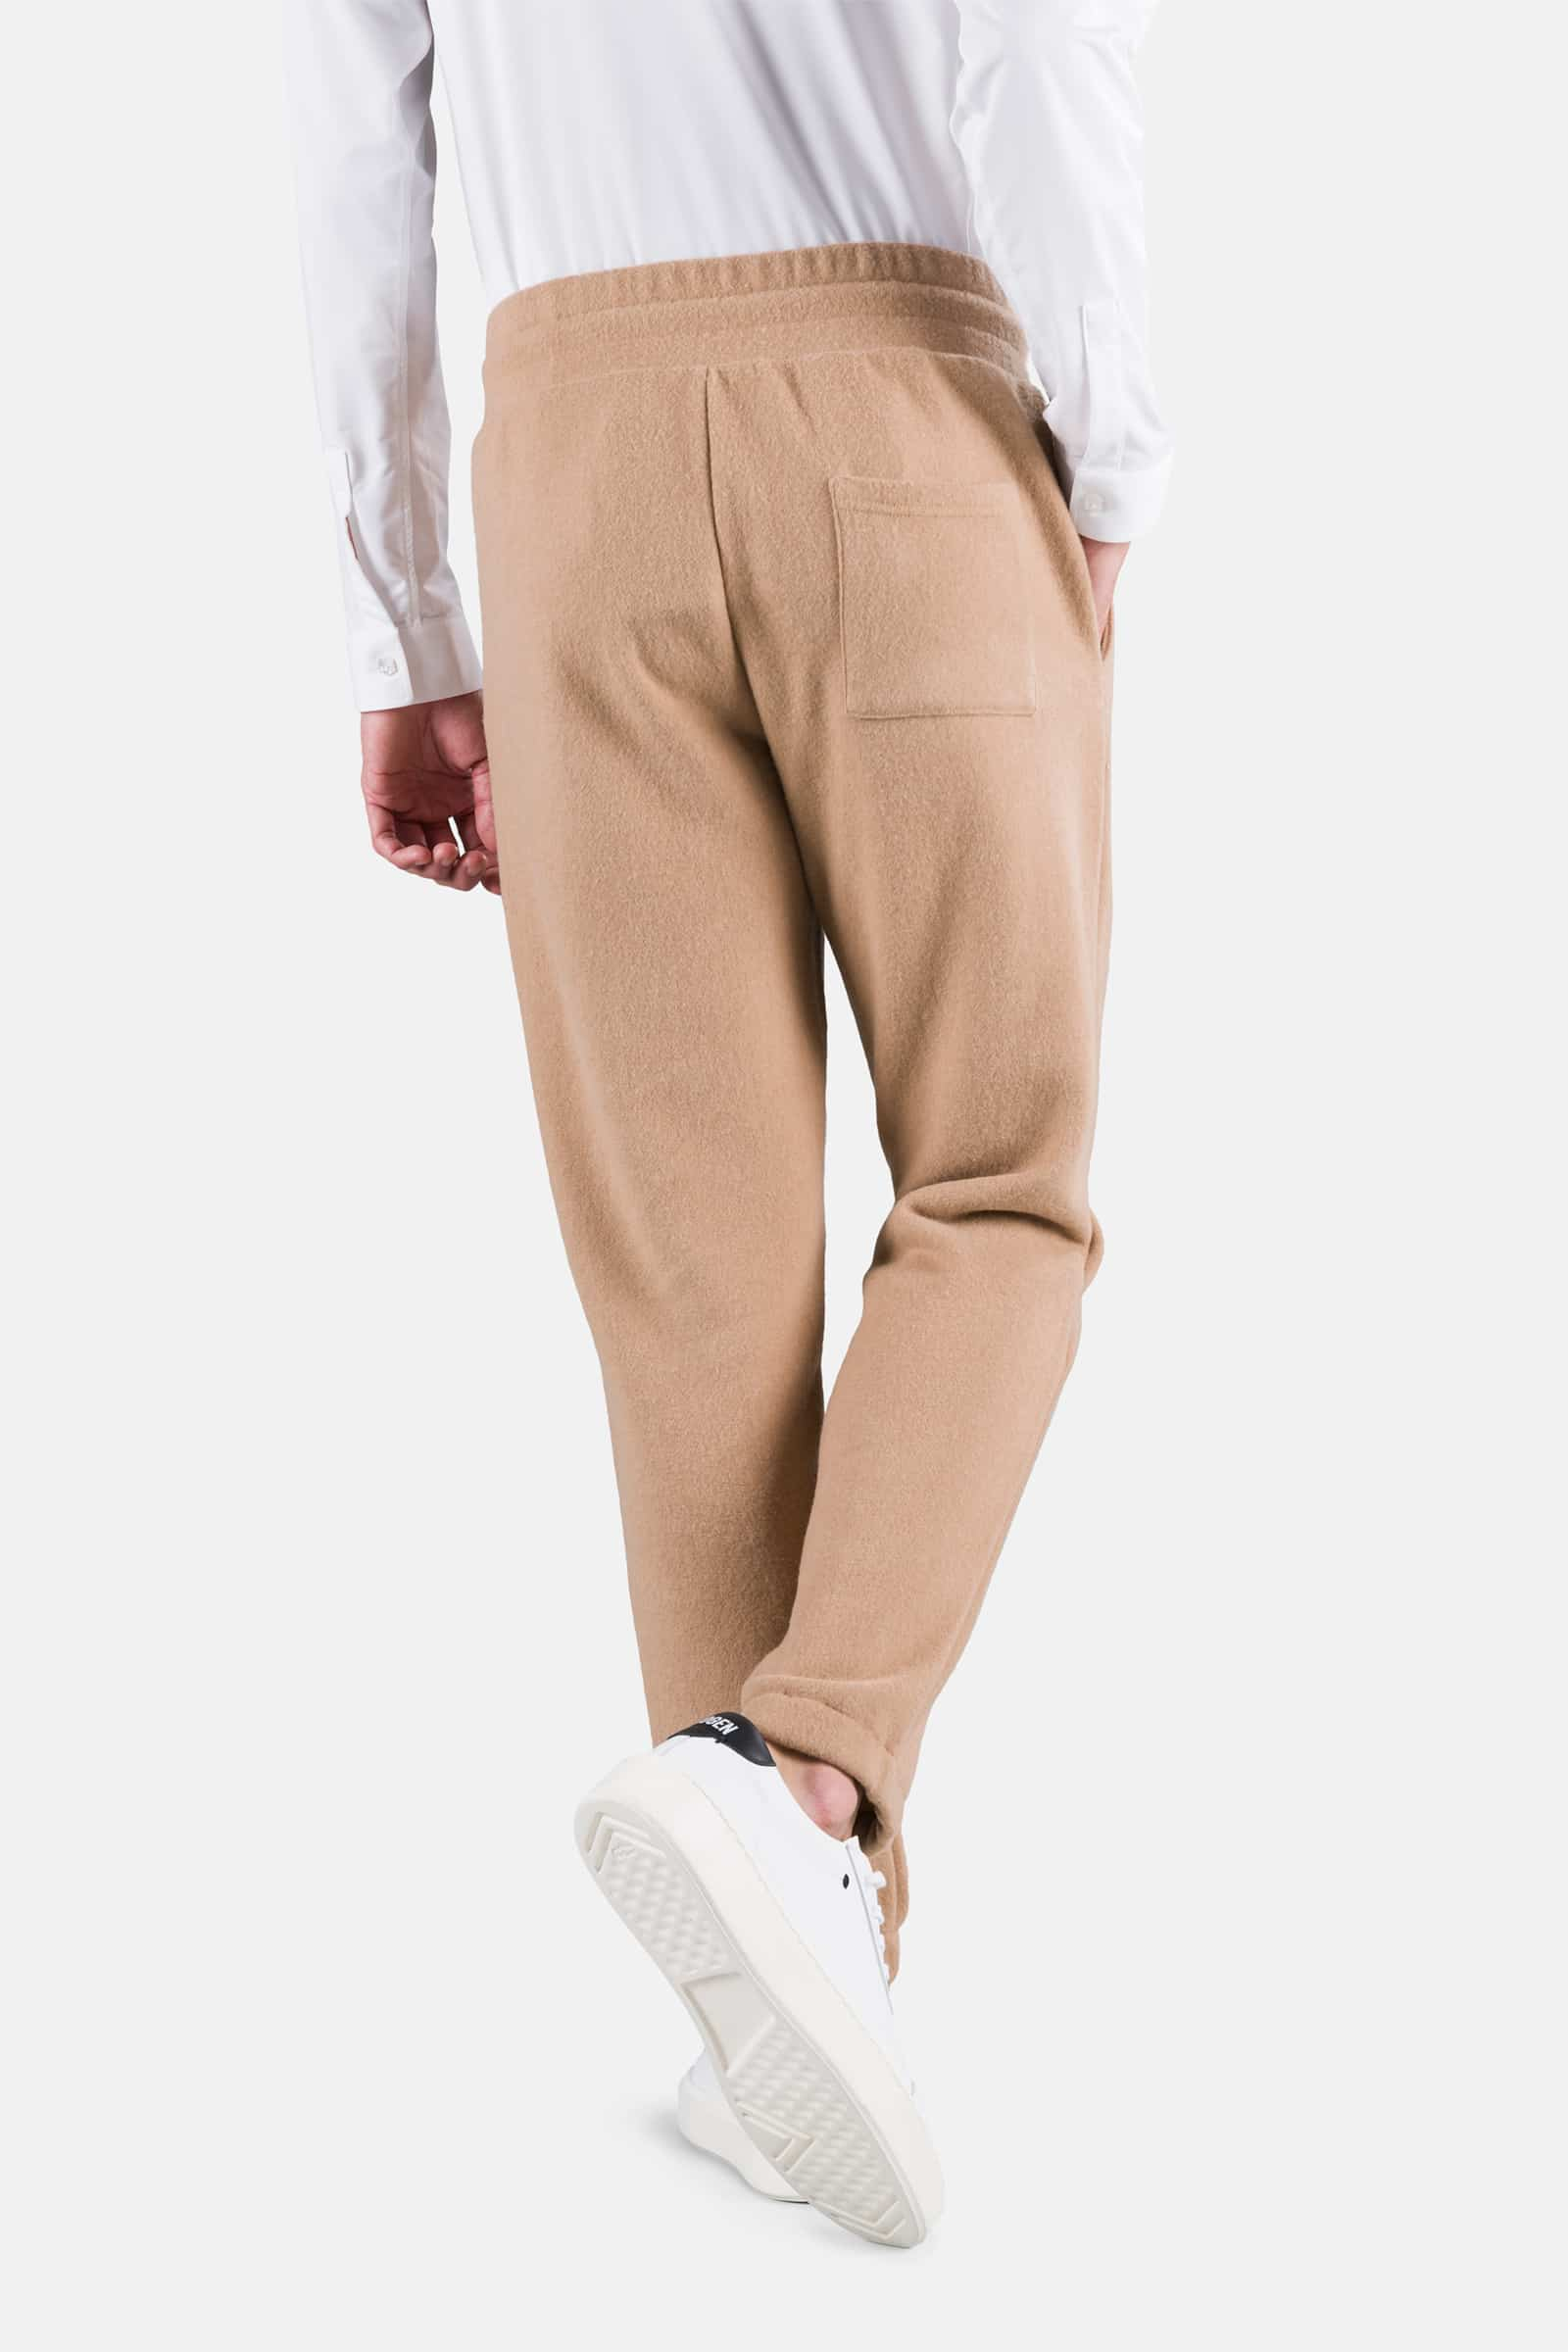 SKULL PANTS - Outlet Hydrogen - Luxury Sportwear